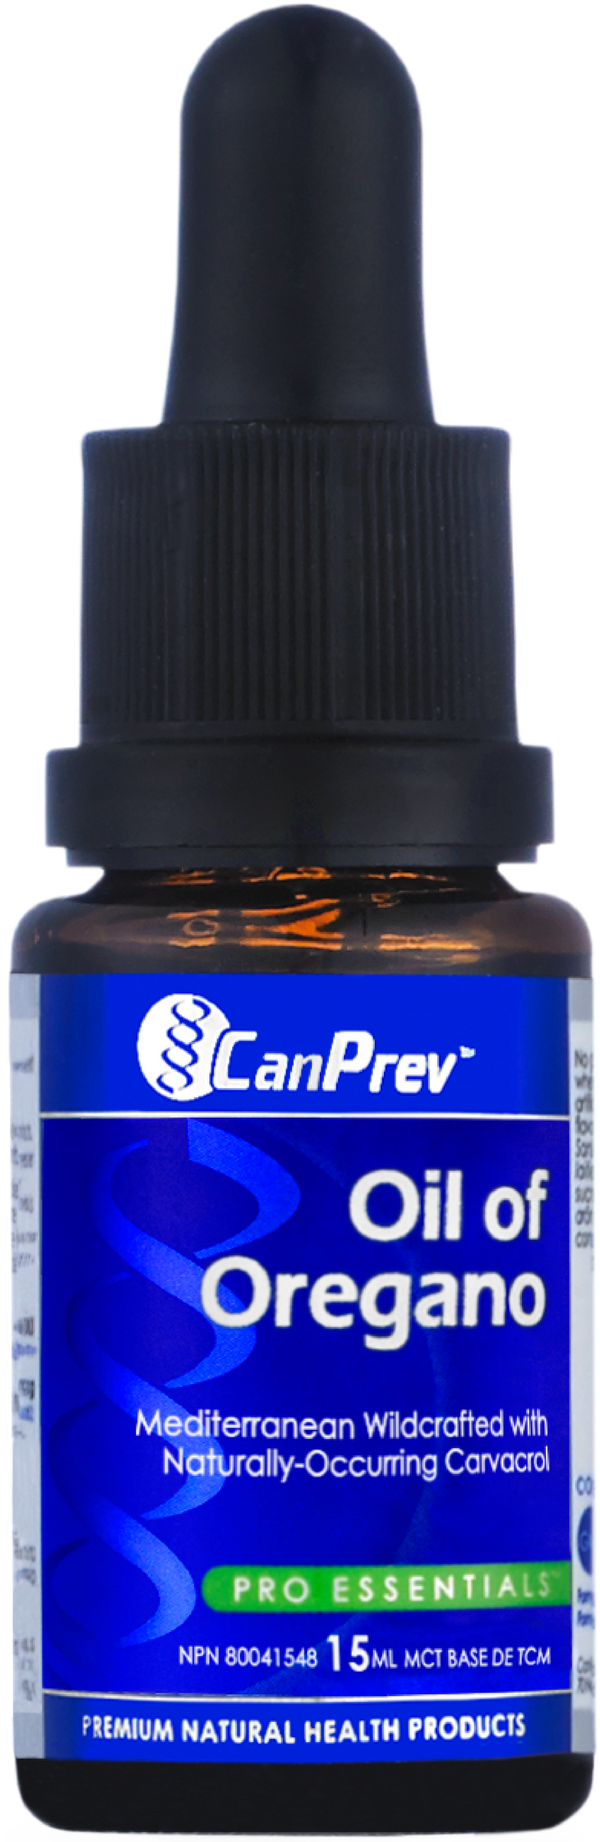 CanPrev Pro Essentials Oil of Oregano